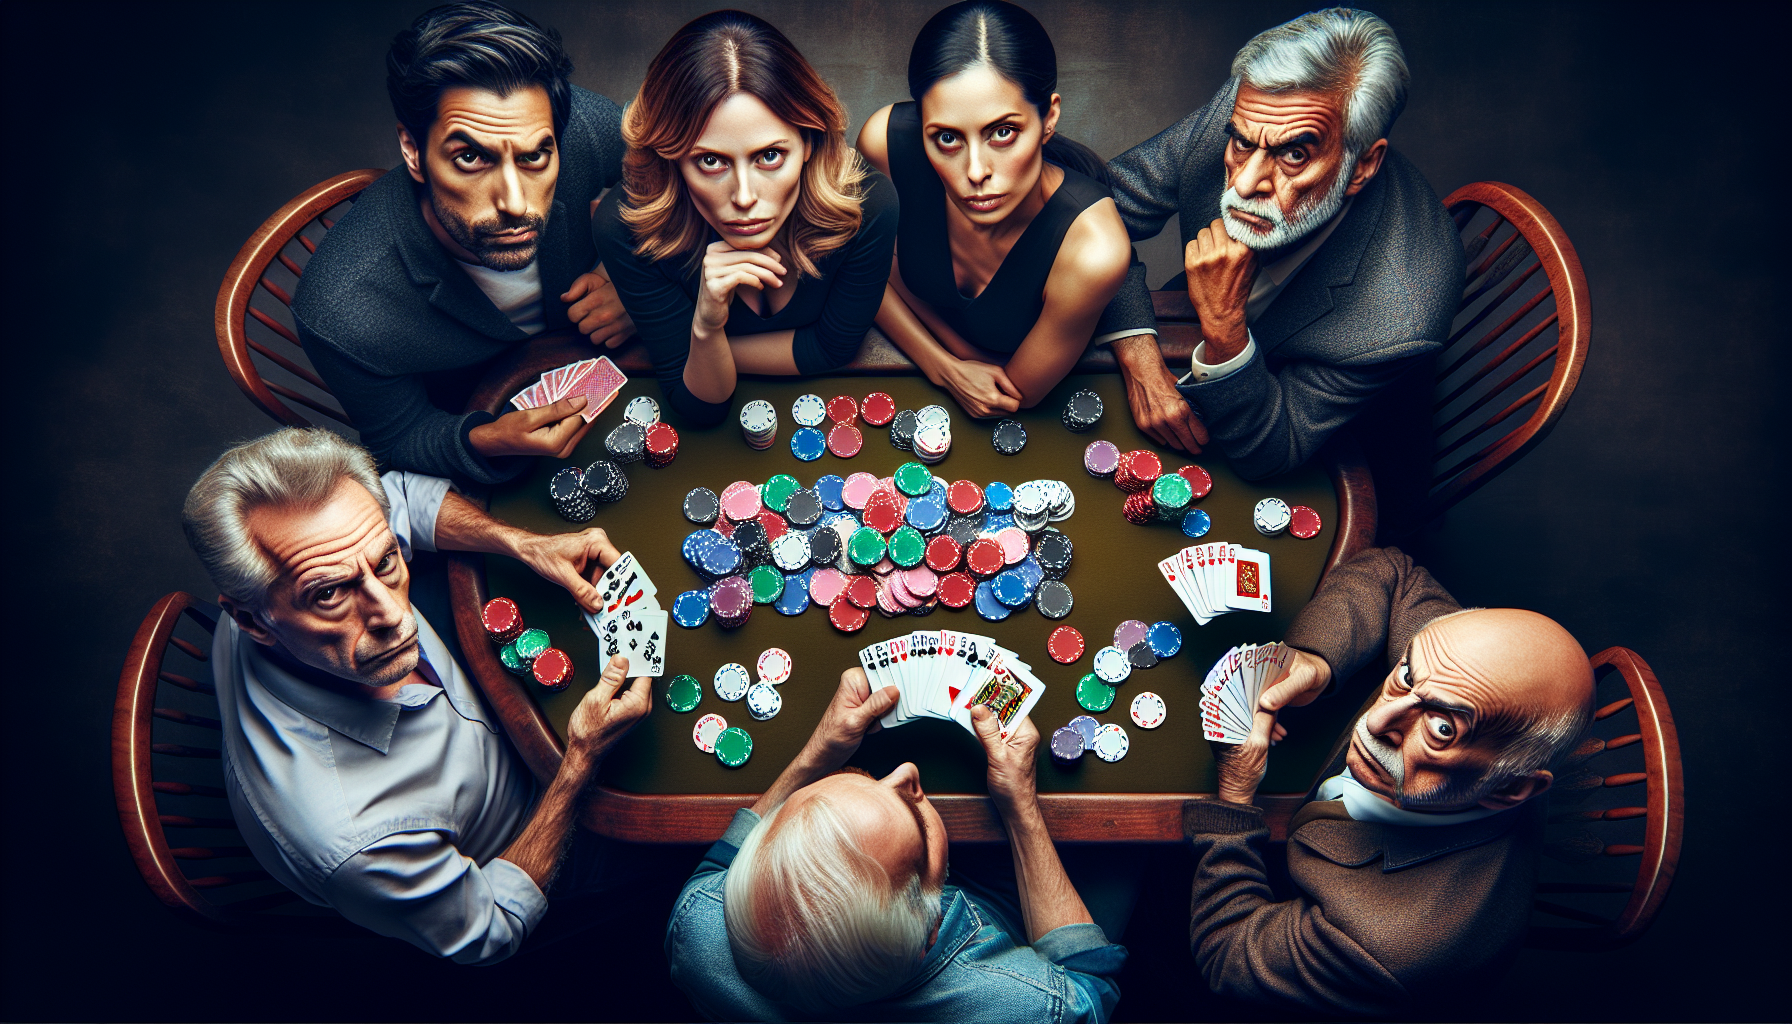 découvrez les stratégies de bluff au poker pour jouer avec succès et maîtriser l'art de la dissimulation dans ce jeu de cartes passionnant.